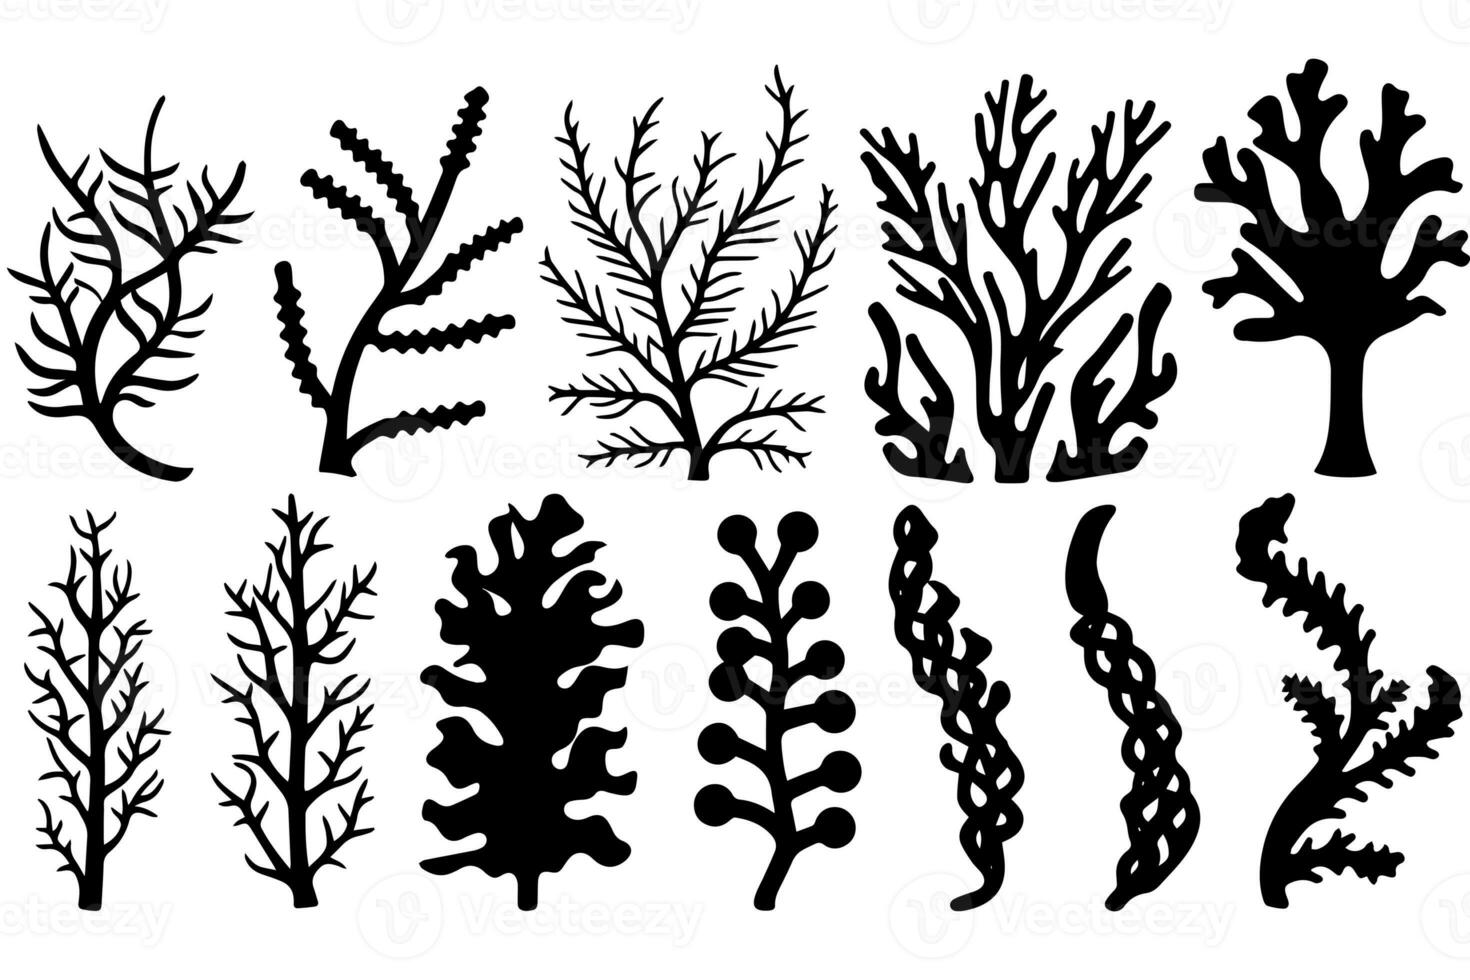 mão desenhado conjunto do corais e algas marinhas silhueta isolado em branco fundo. vetor ícones e carimbo ilustração. foto